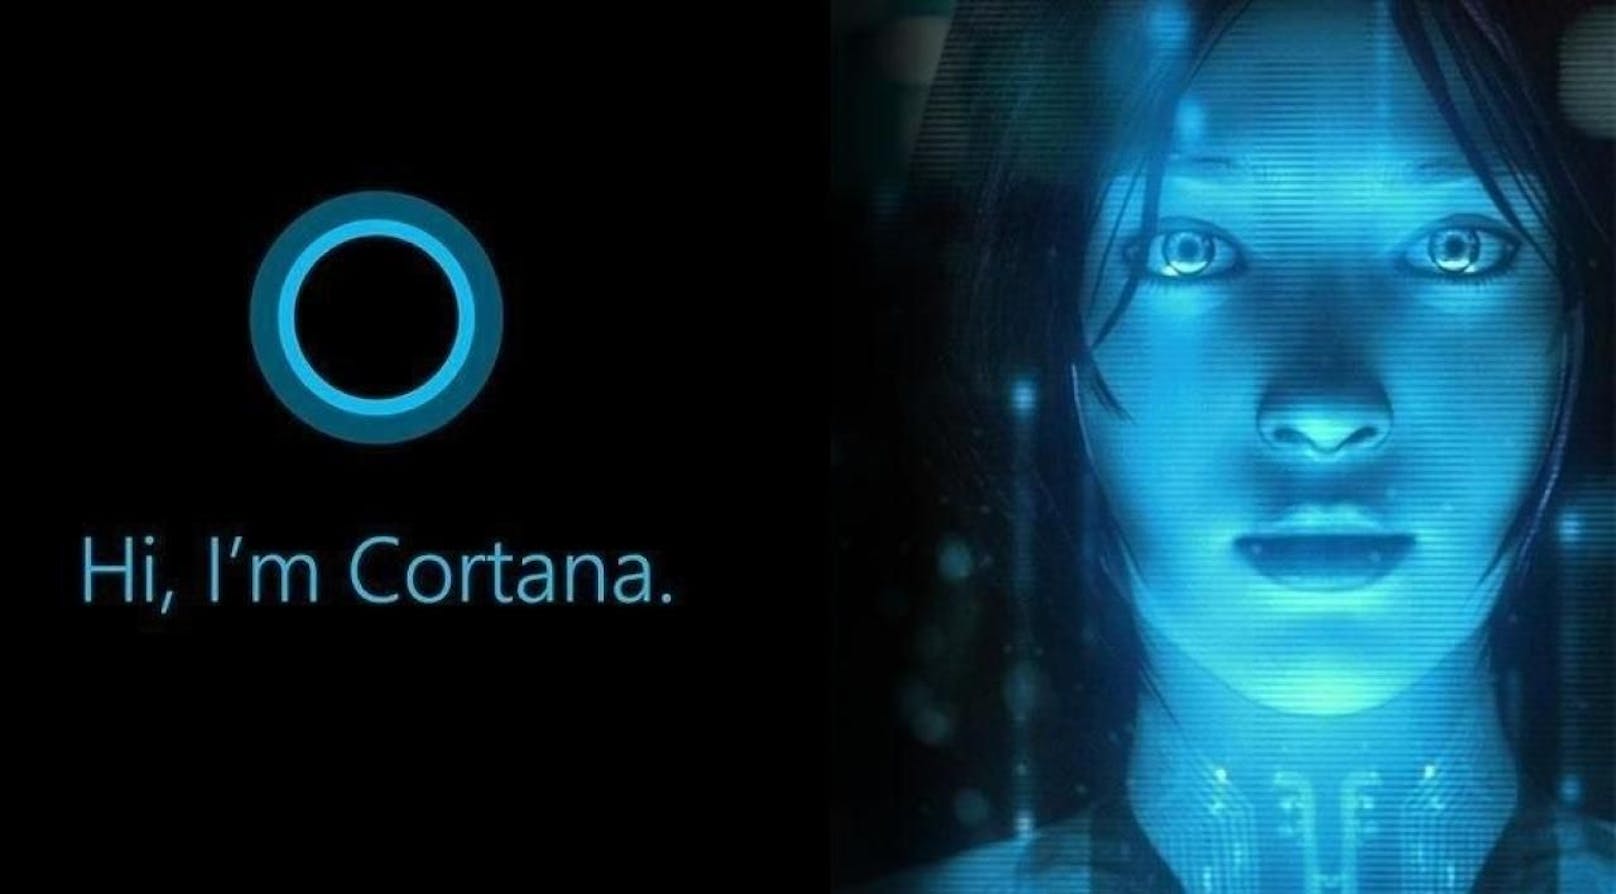 Die virtuelle Assistentin Cortana soll in Zukunft mithilfe von künstlicher Intelligenz noch schlauer werden.